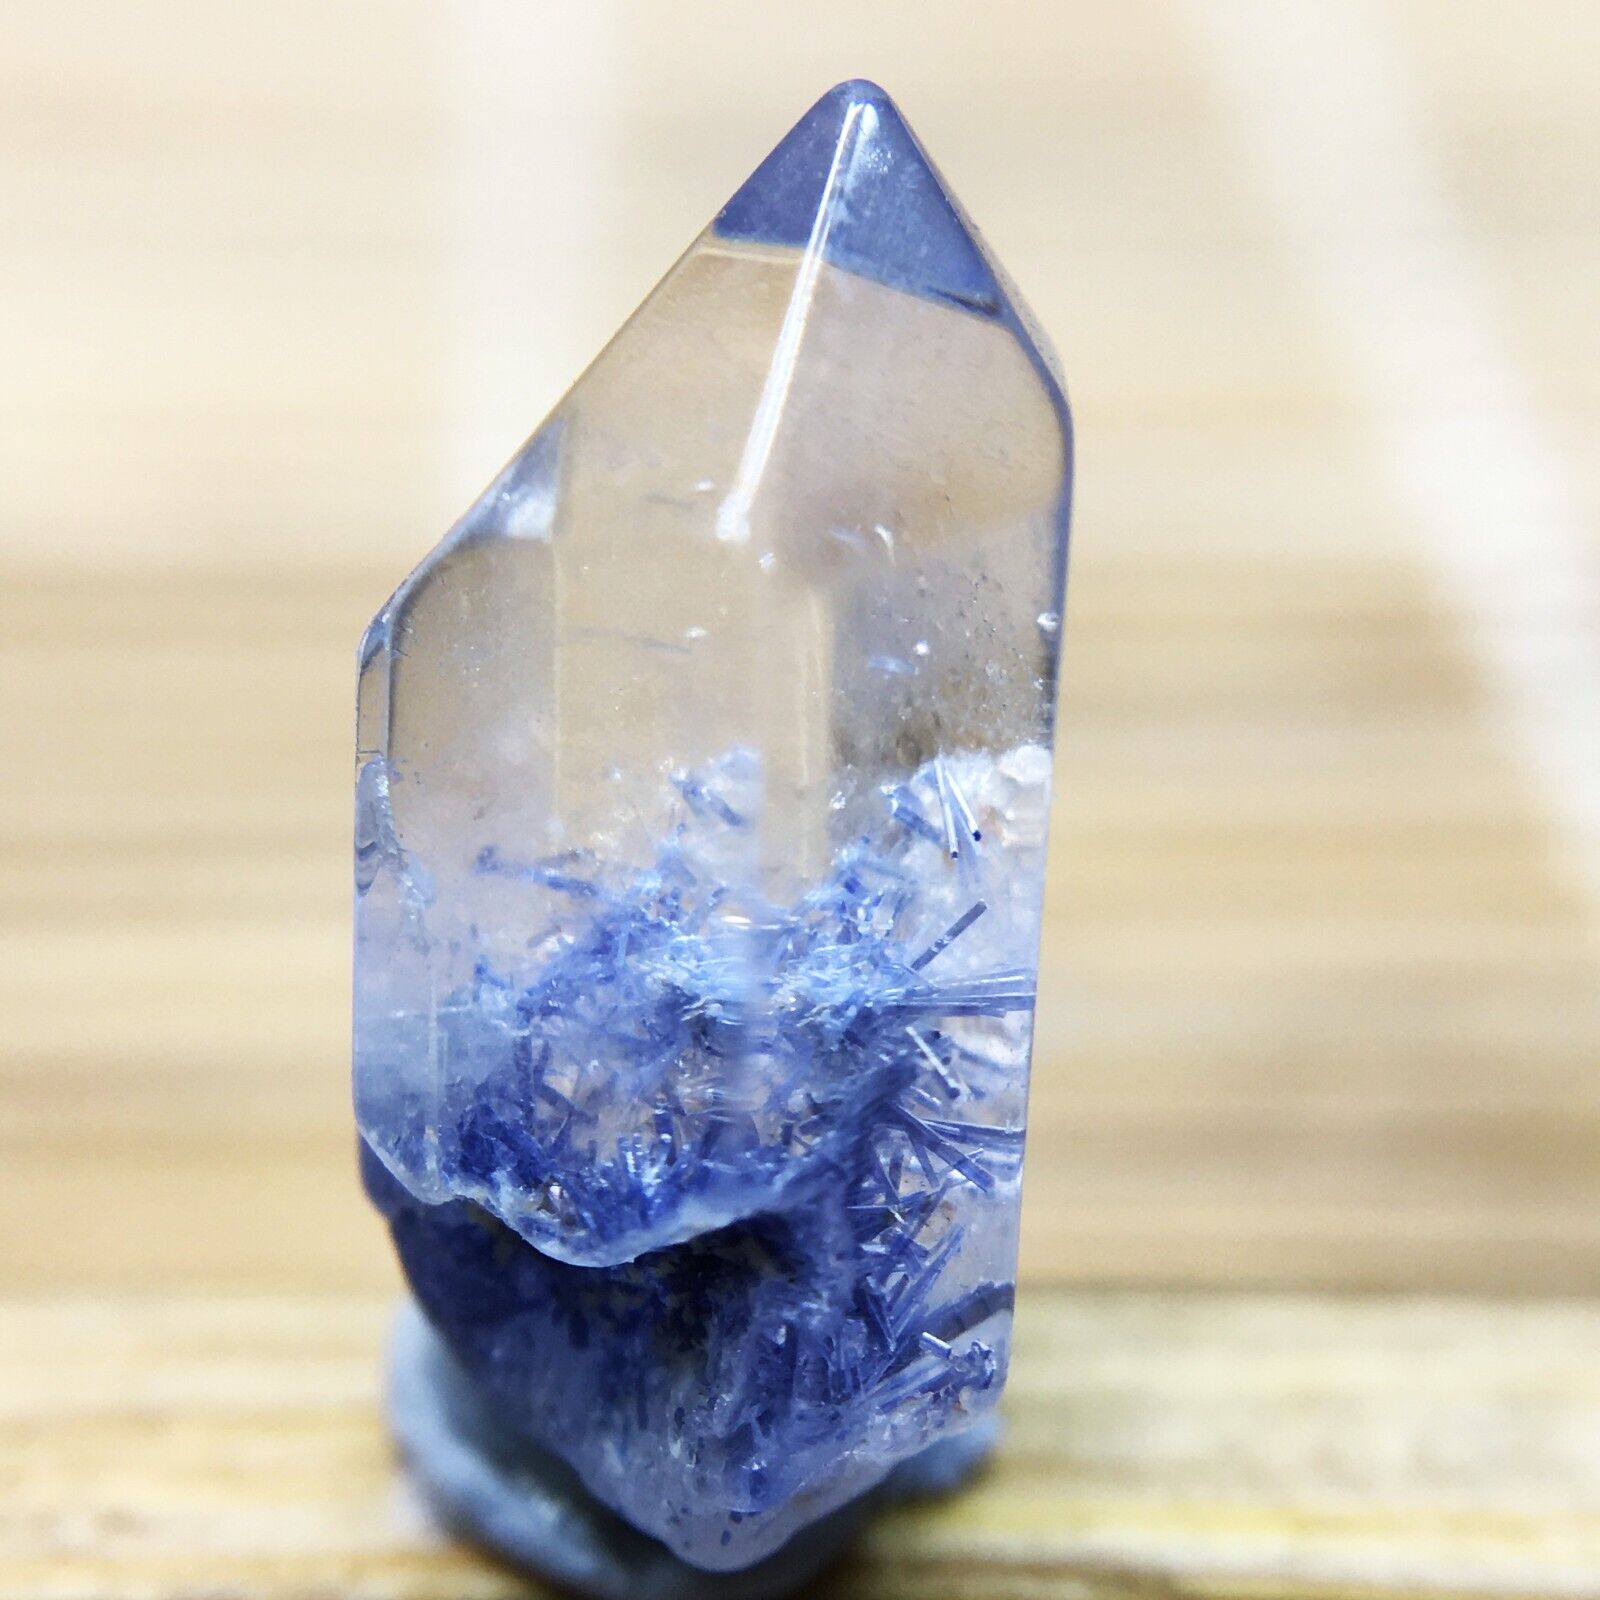 2.5Ct Very Rare NATURAL Beautiful Blue Dumortierite Quartz Crystal Specimen